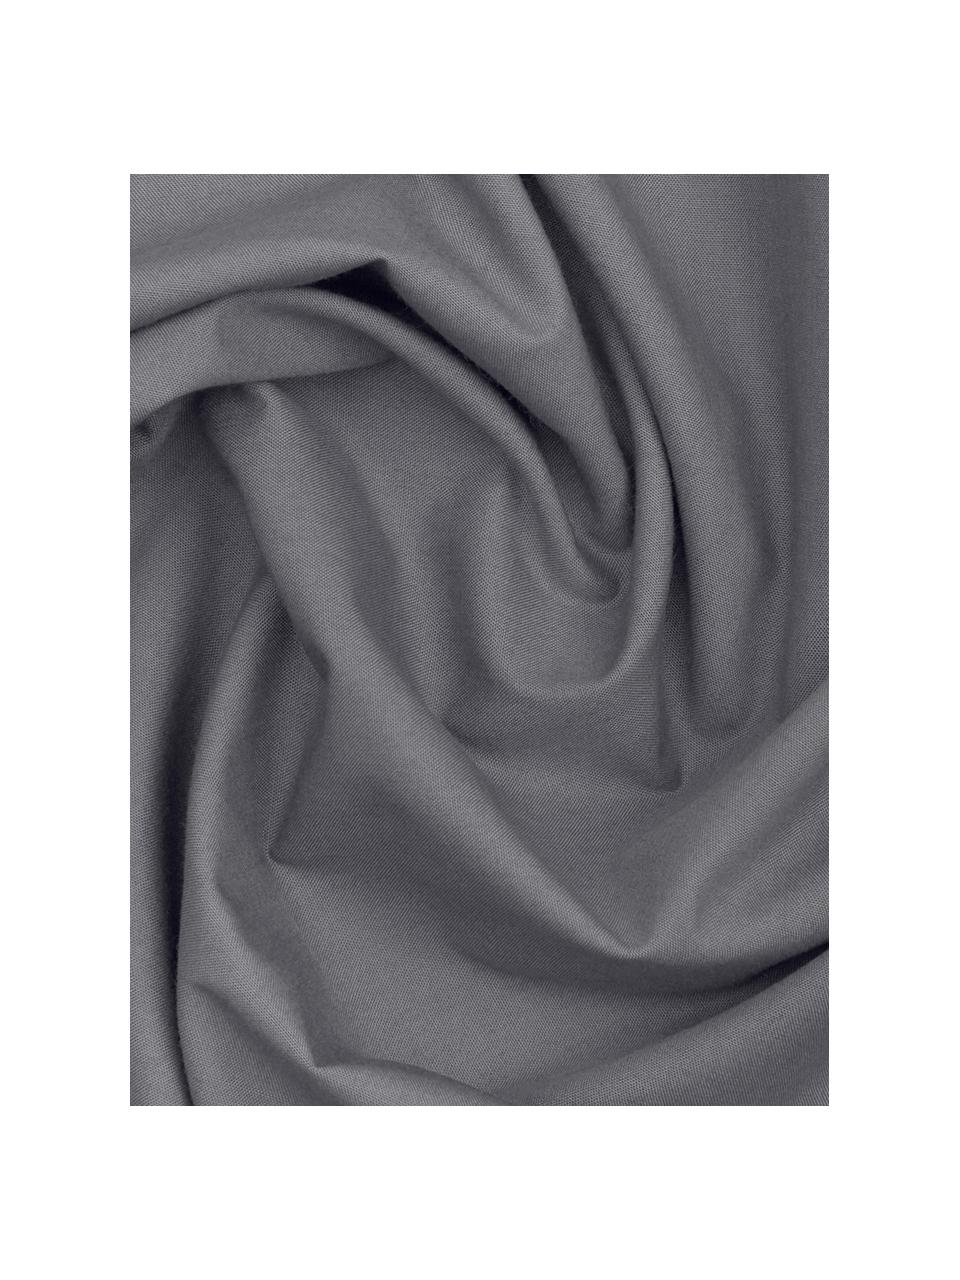 Biancheria da letto in percalle grigio scuro Elsie, Grigio scuro, 180 x 300 cm + 2 federe 50 x 80 cm